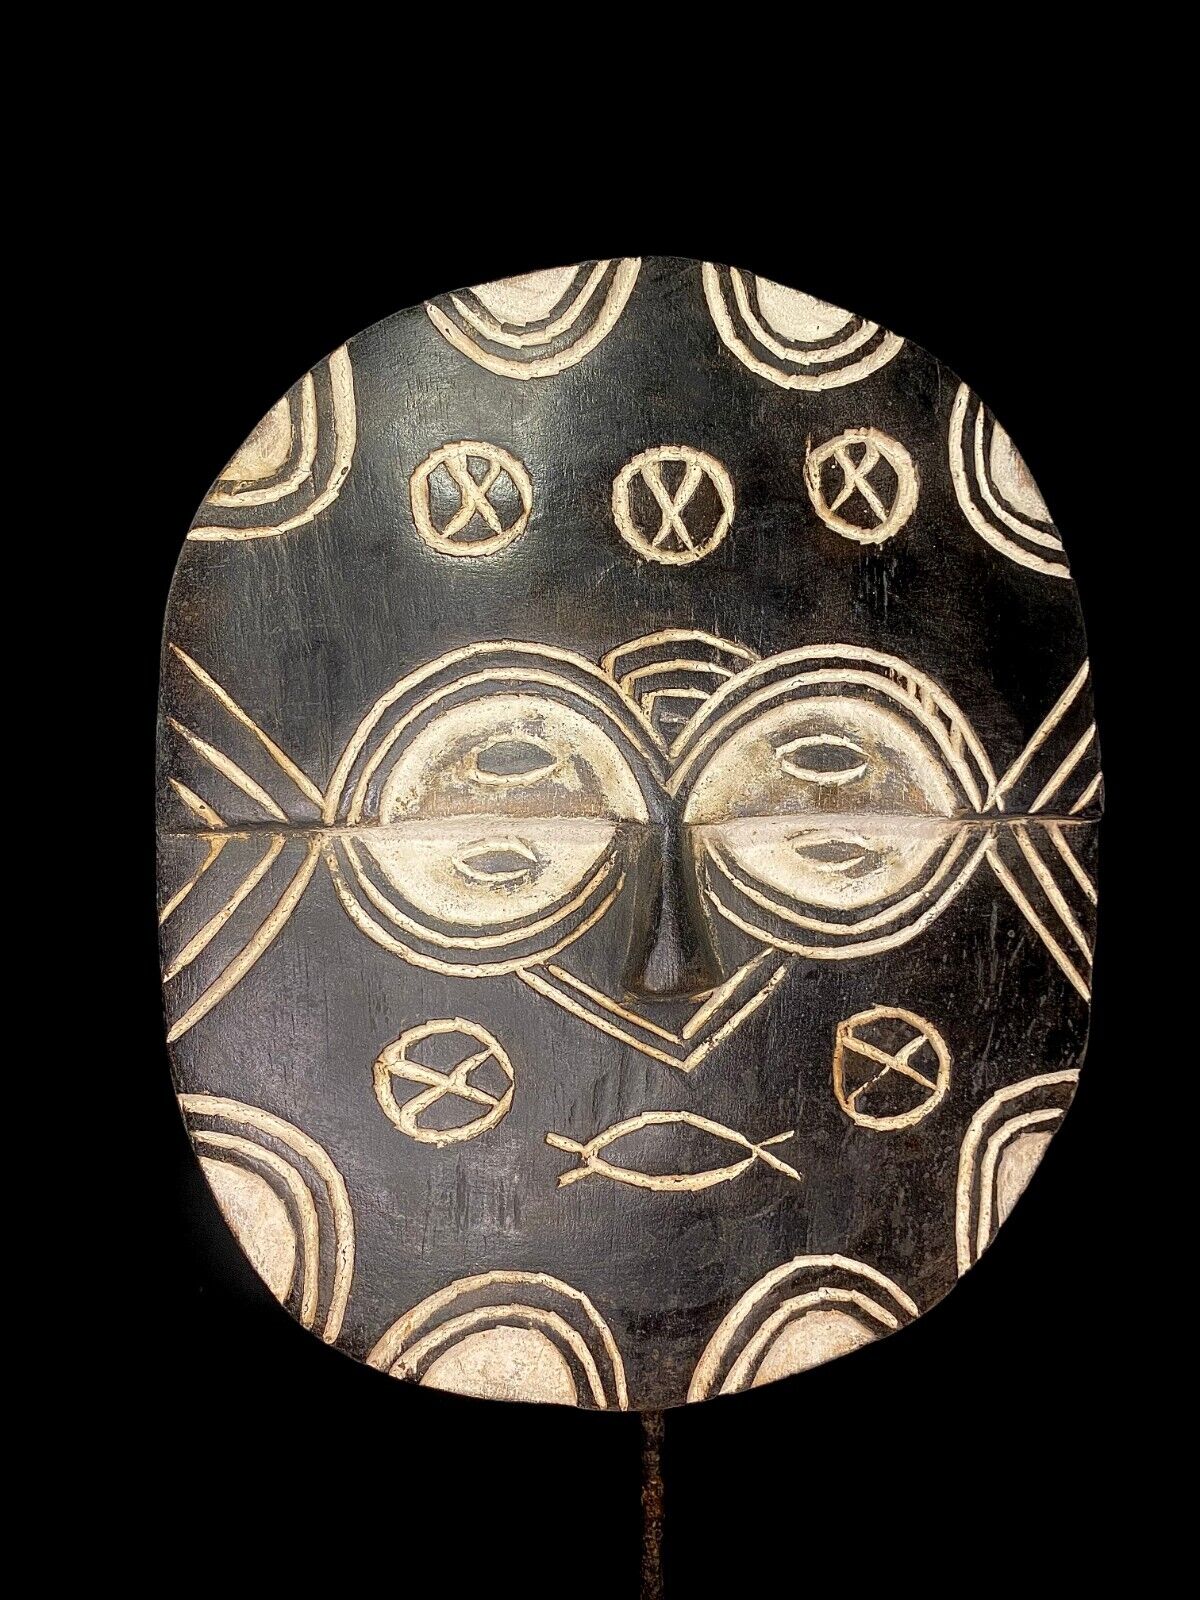  Teke African mask antiques tribal art Face vintage Wood Carved Vintage mas-5978